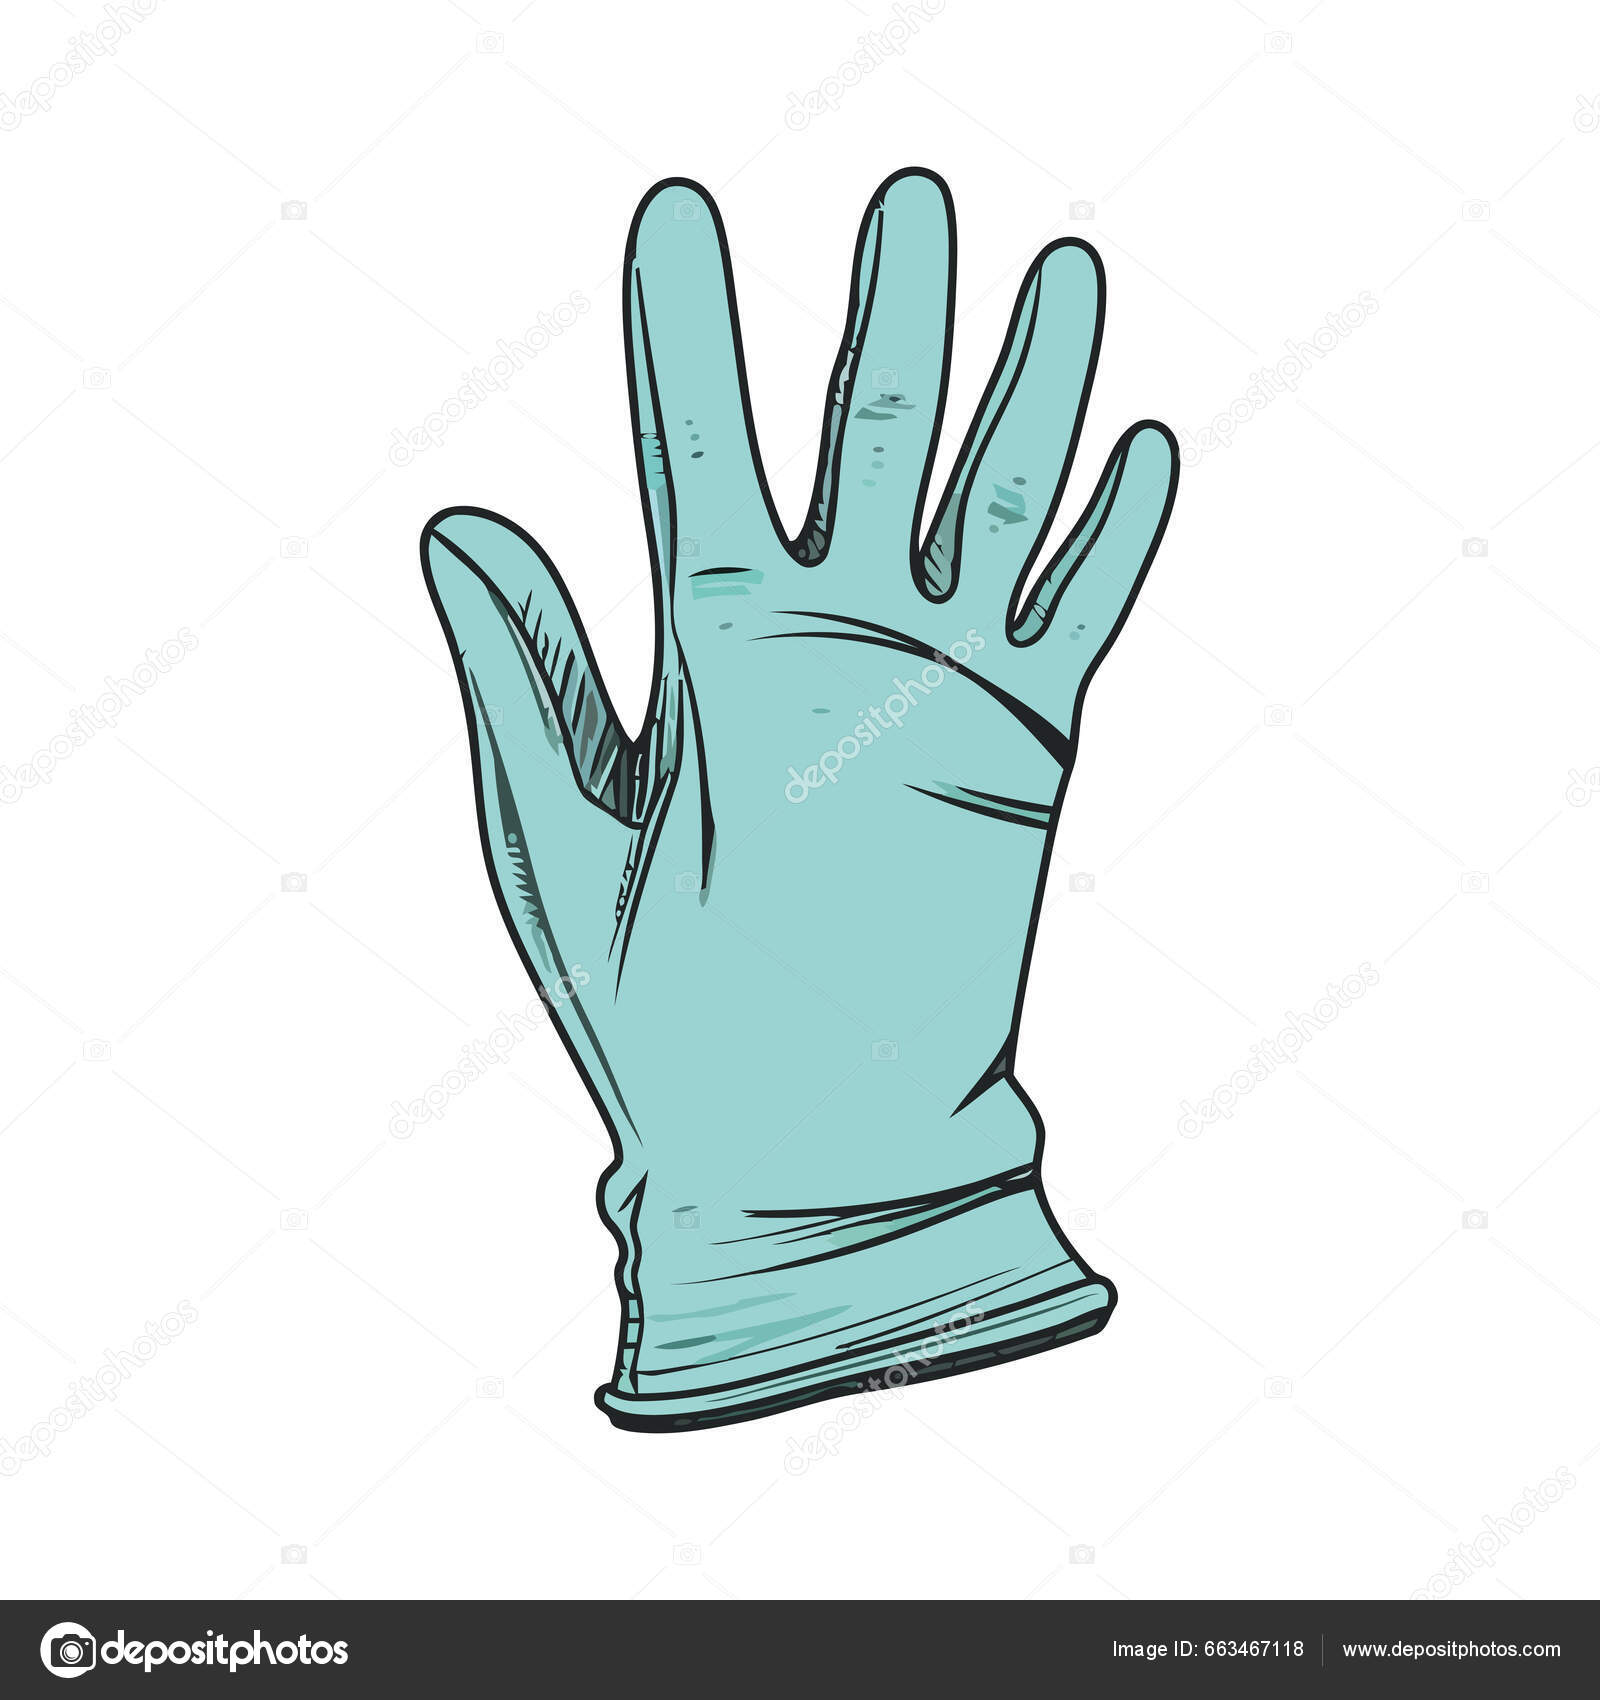 Gloves wipe: Más de 4,278 ilustraciones y dibujos de stock con